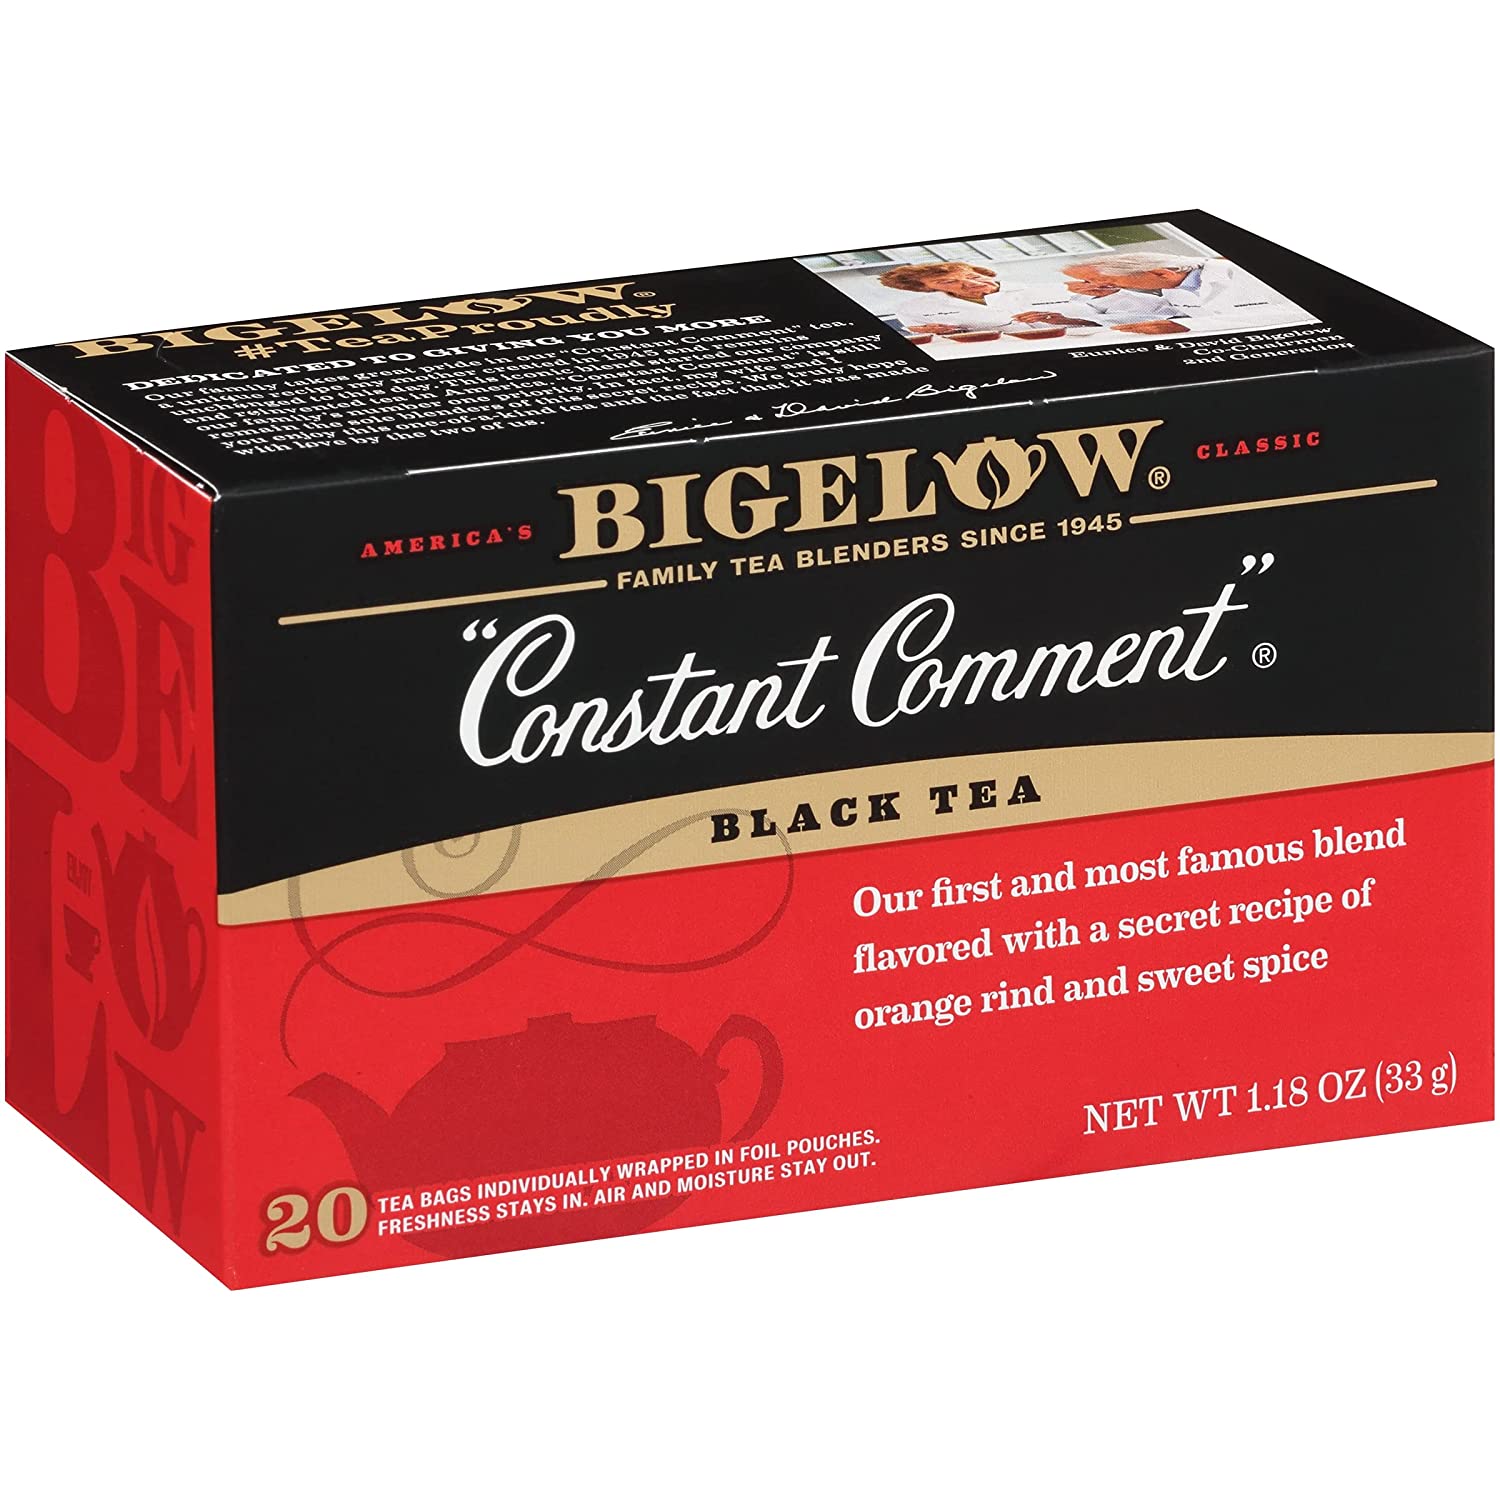 Trà đen túi lọc Bigelow Constant Comment hàng Mỹ hương cam quế hộp 20 gối